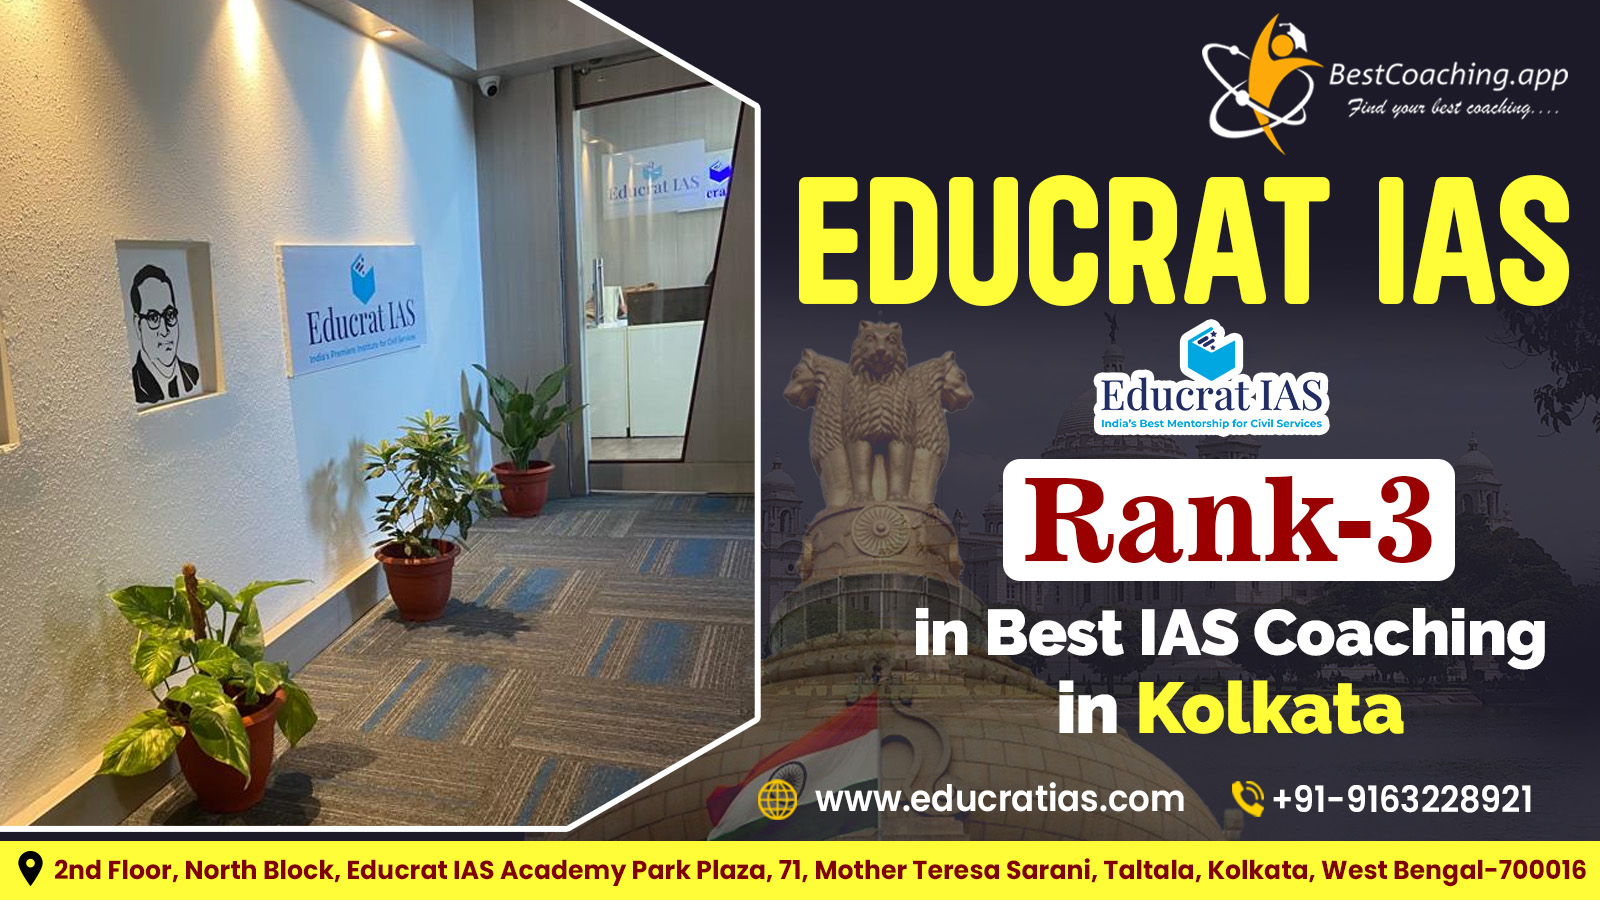 Educrat IAS Rank 3 in Best IAS Coaching in Kolkata